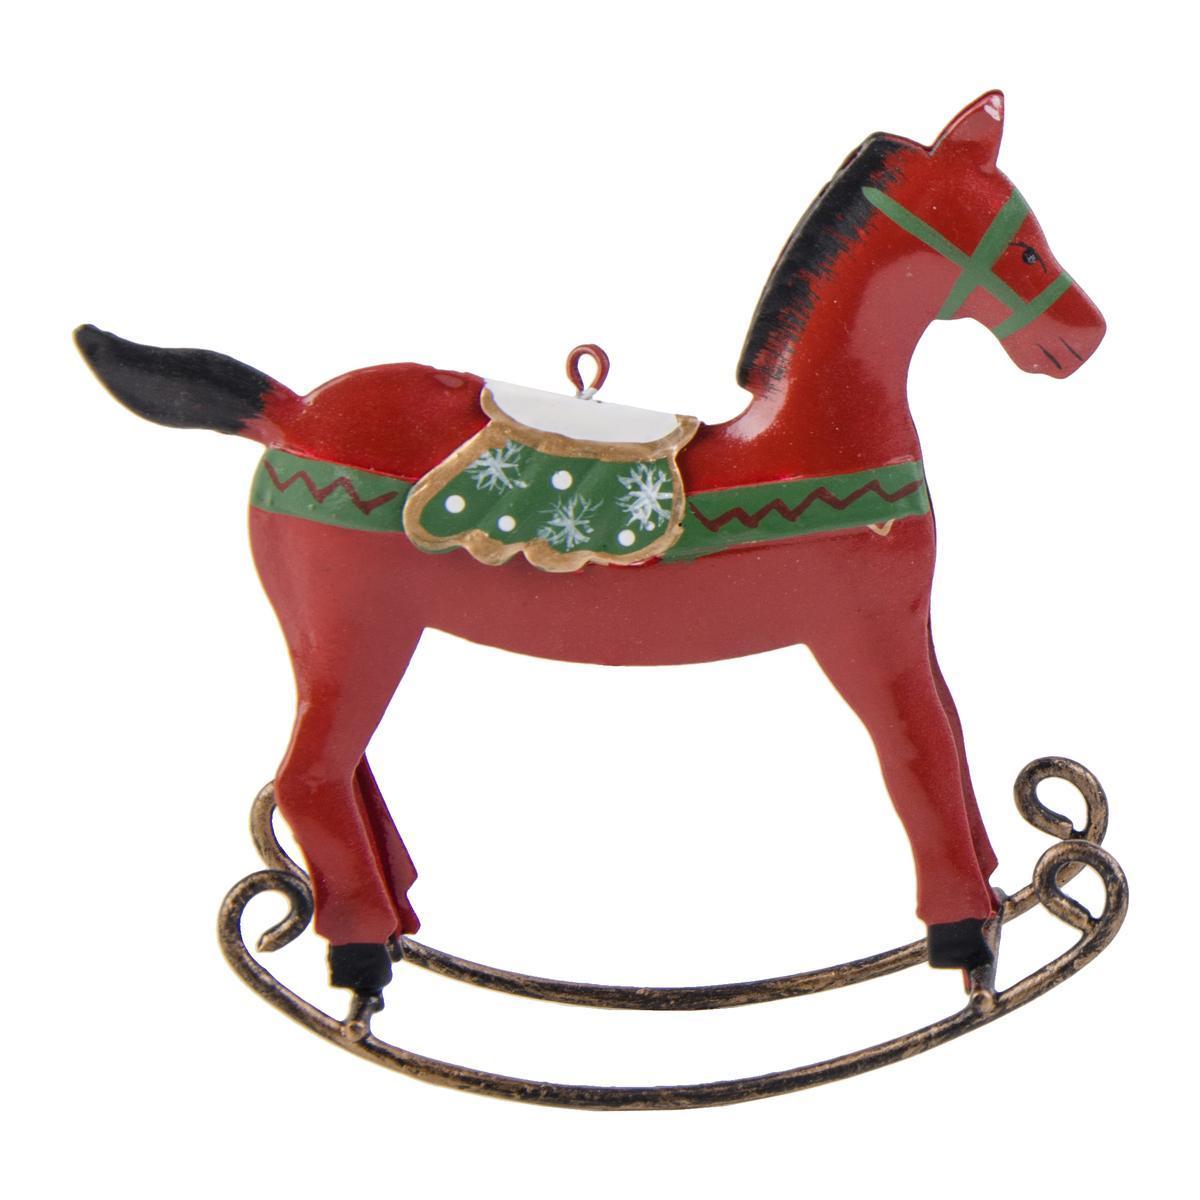 Suspension cheval à bascule - Métal - 12 x 3 x H 12 cm - Rouge et vert